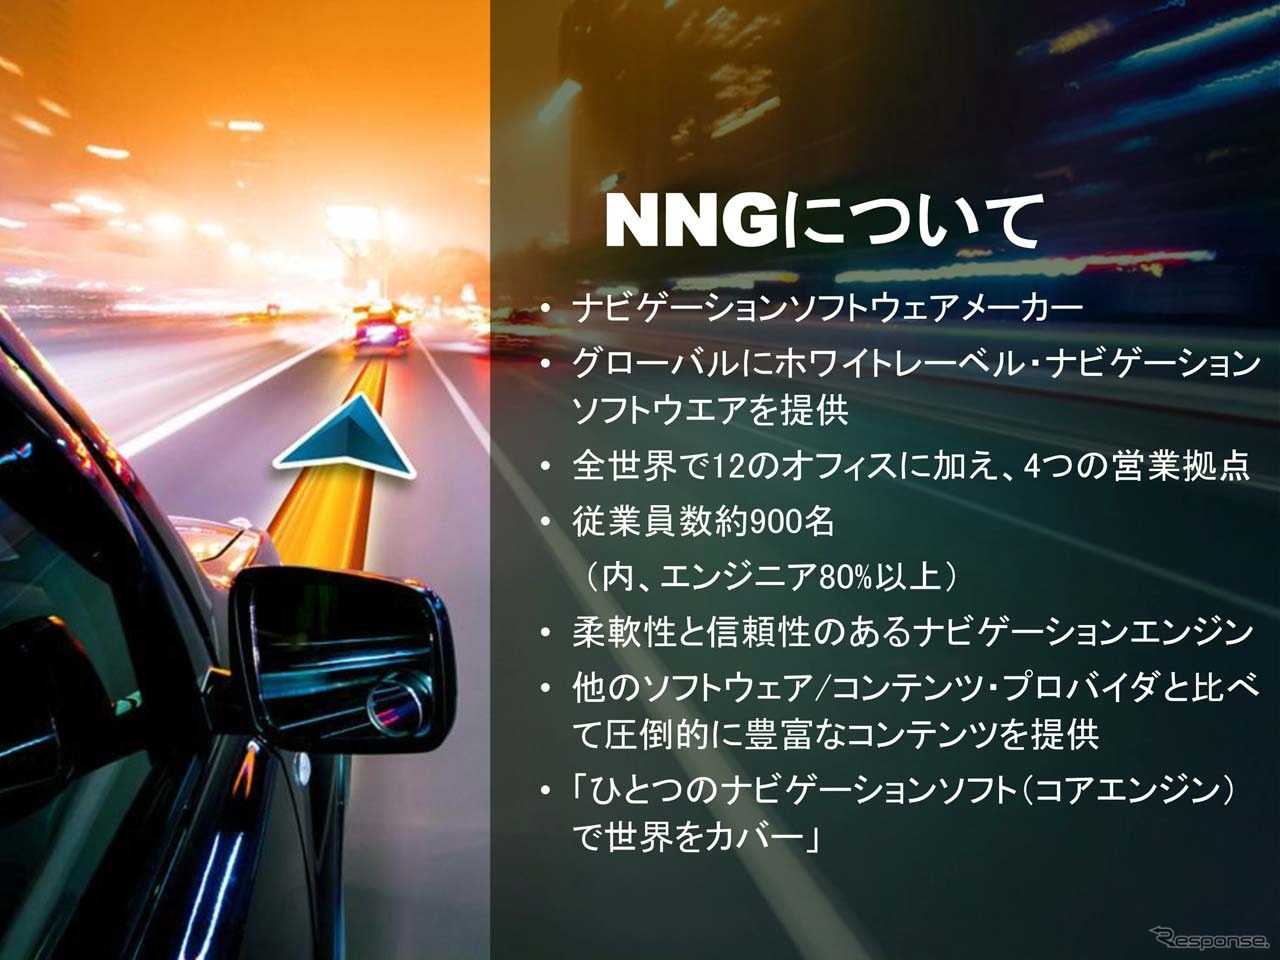 NNGは全社員が約900名。そのうち約60名を日本市場向けに配置した